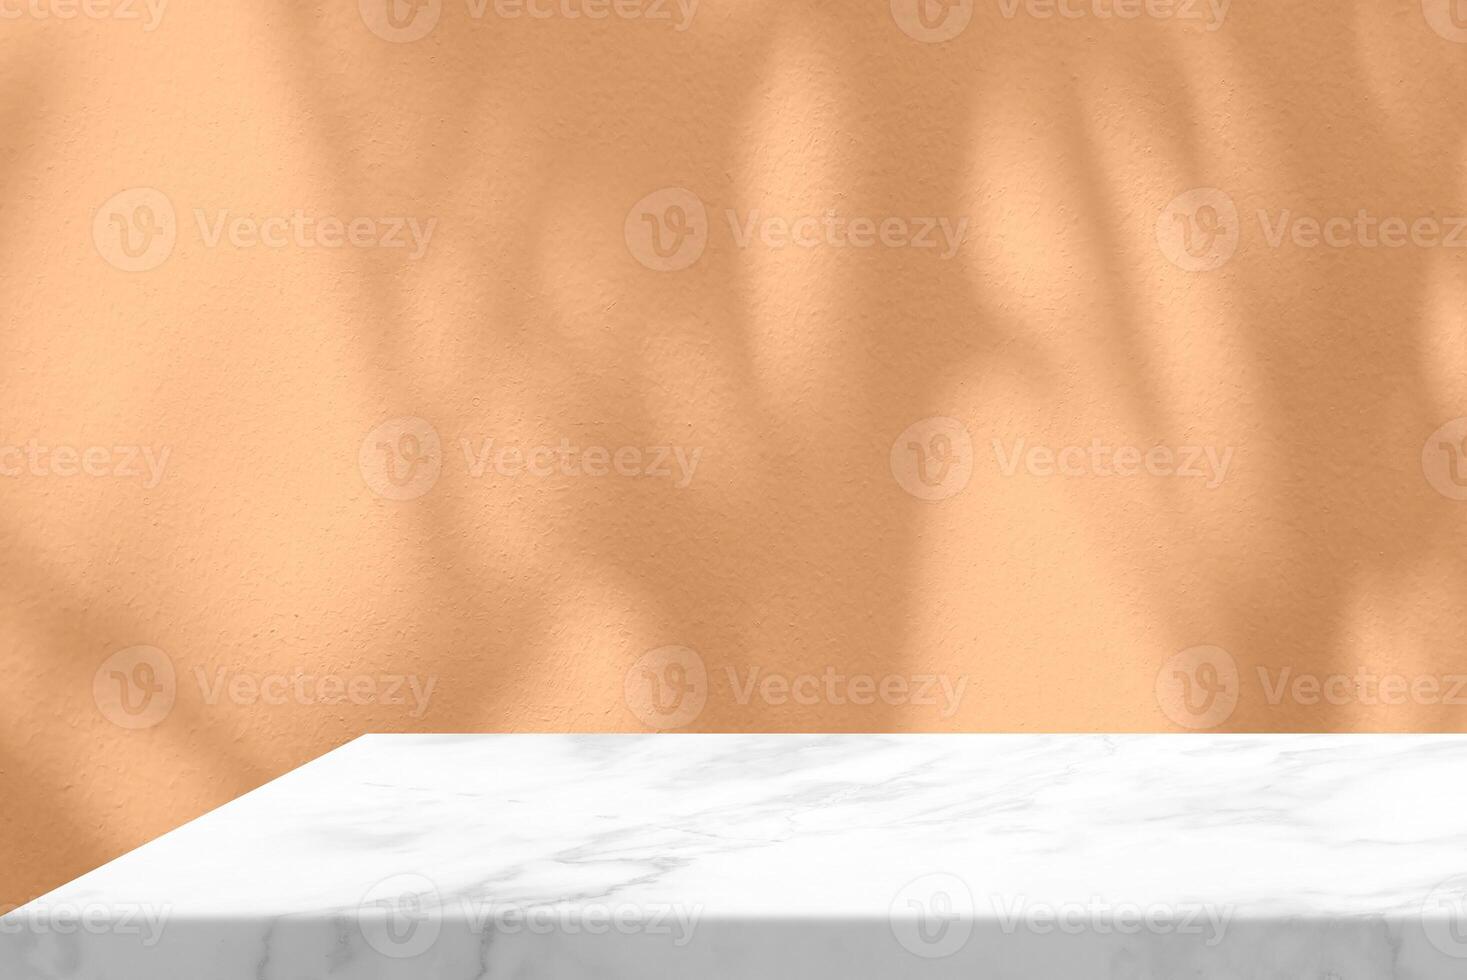 vit marmor tabell med träd skugga på betong vägg textur bakgrund i reste sig guld Färg, lämplig för produkt presentation bakgrund, visa, och falsk upp. foto